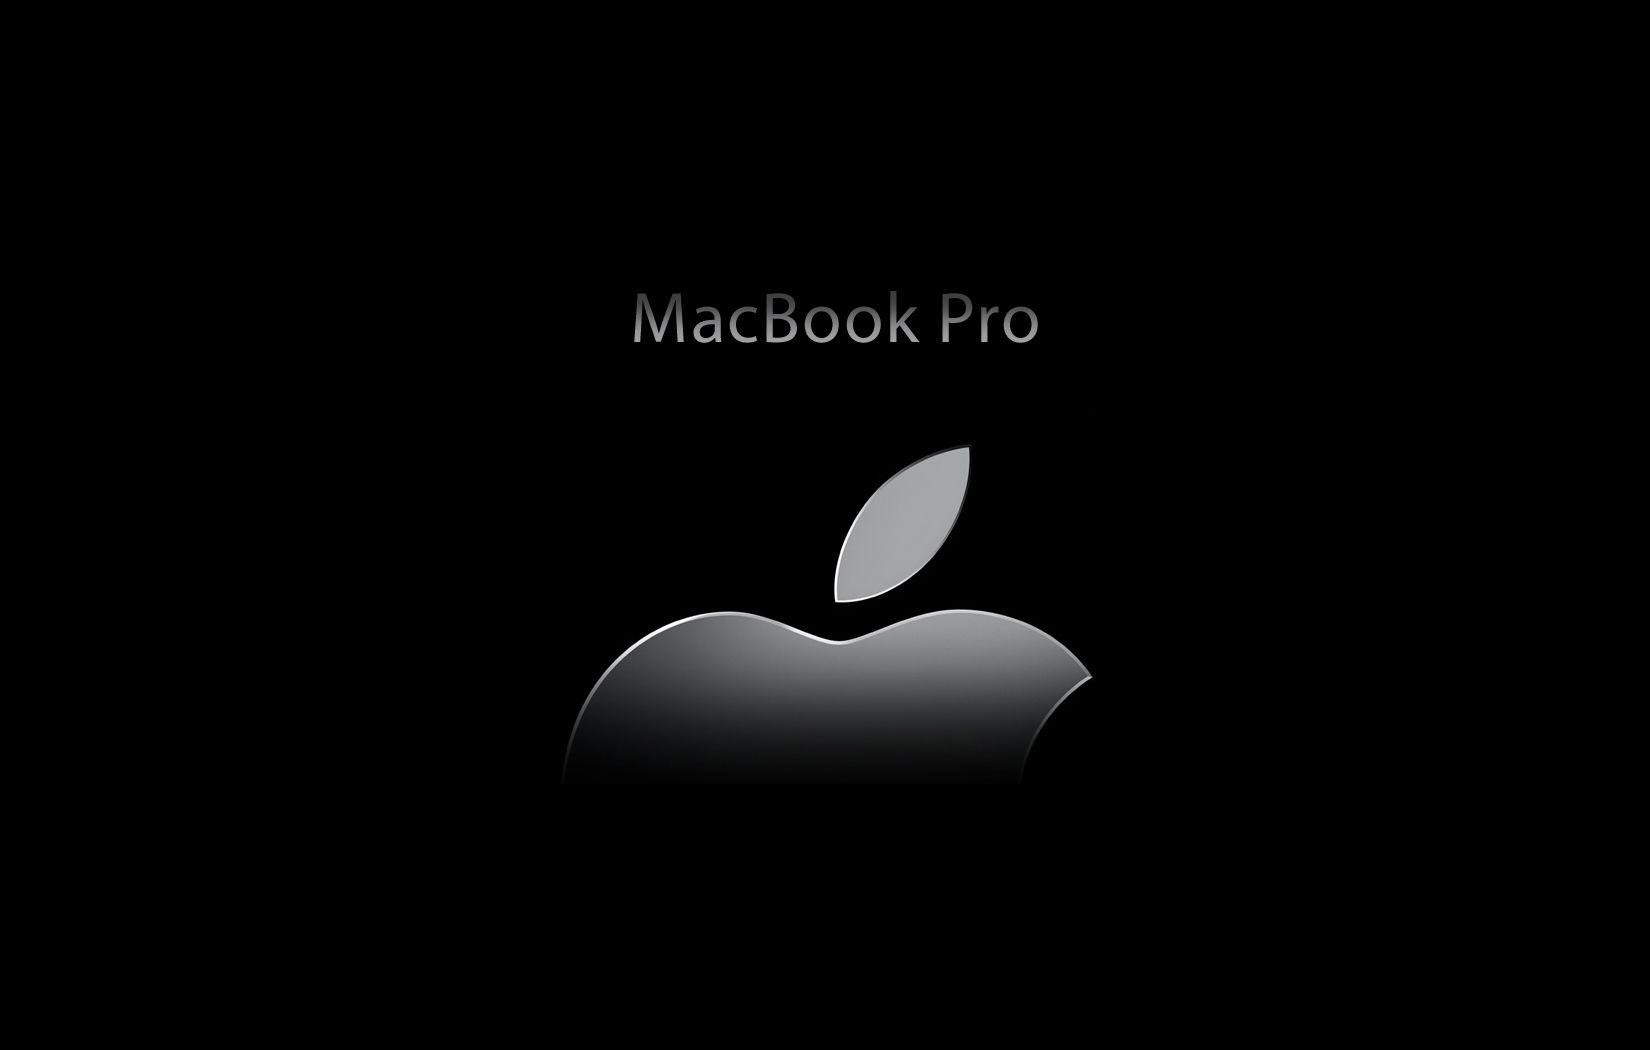 Macbook pro apple logo wallpapers